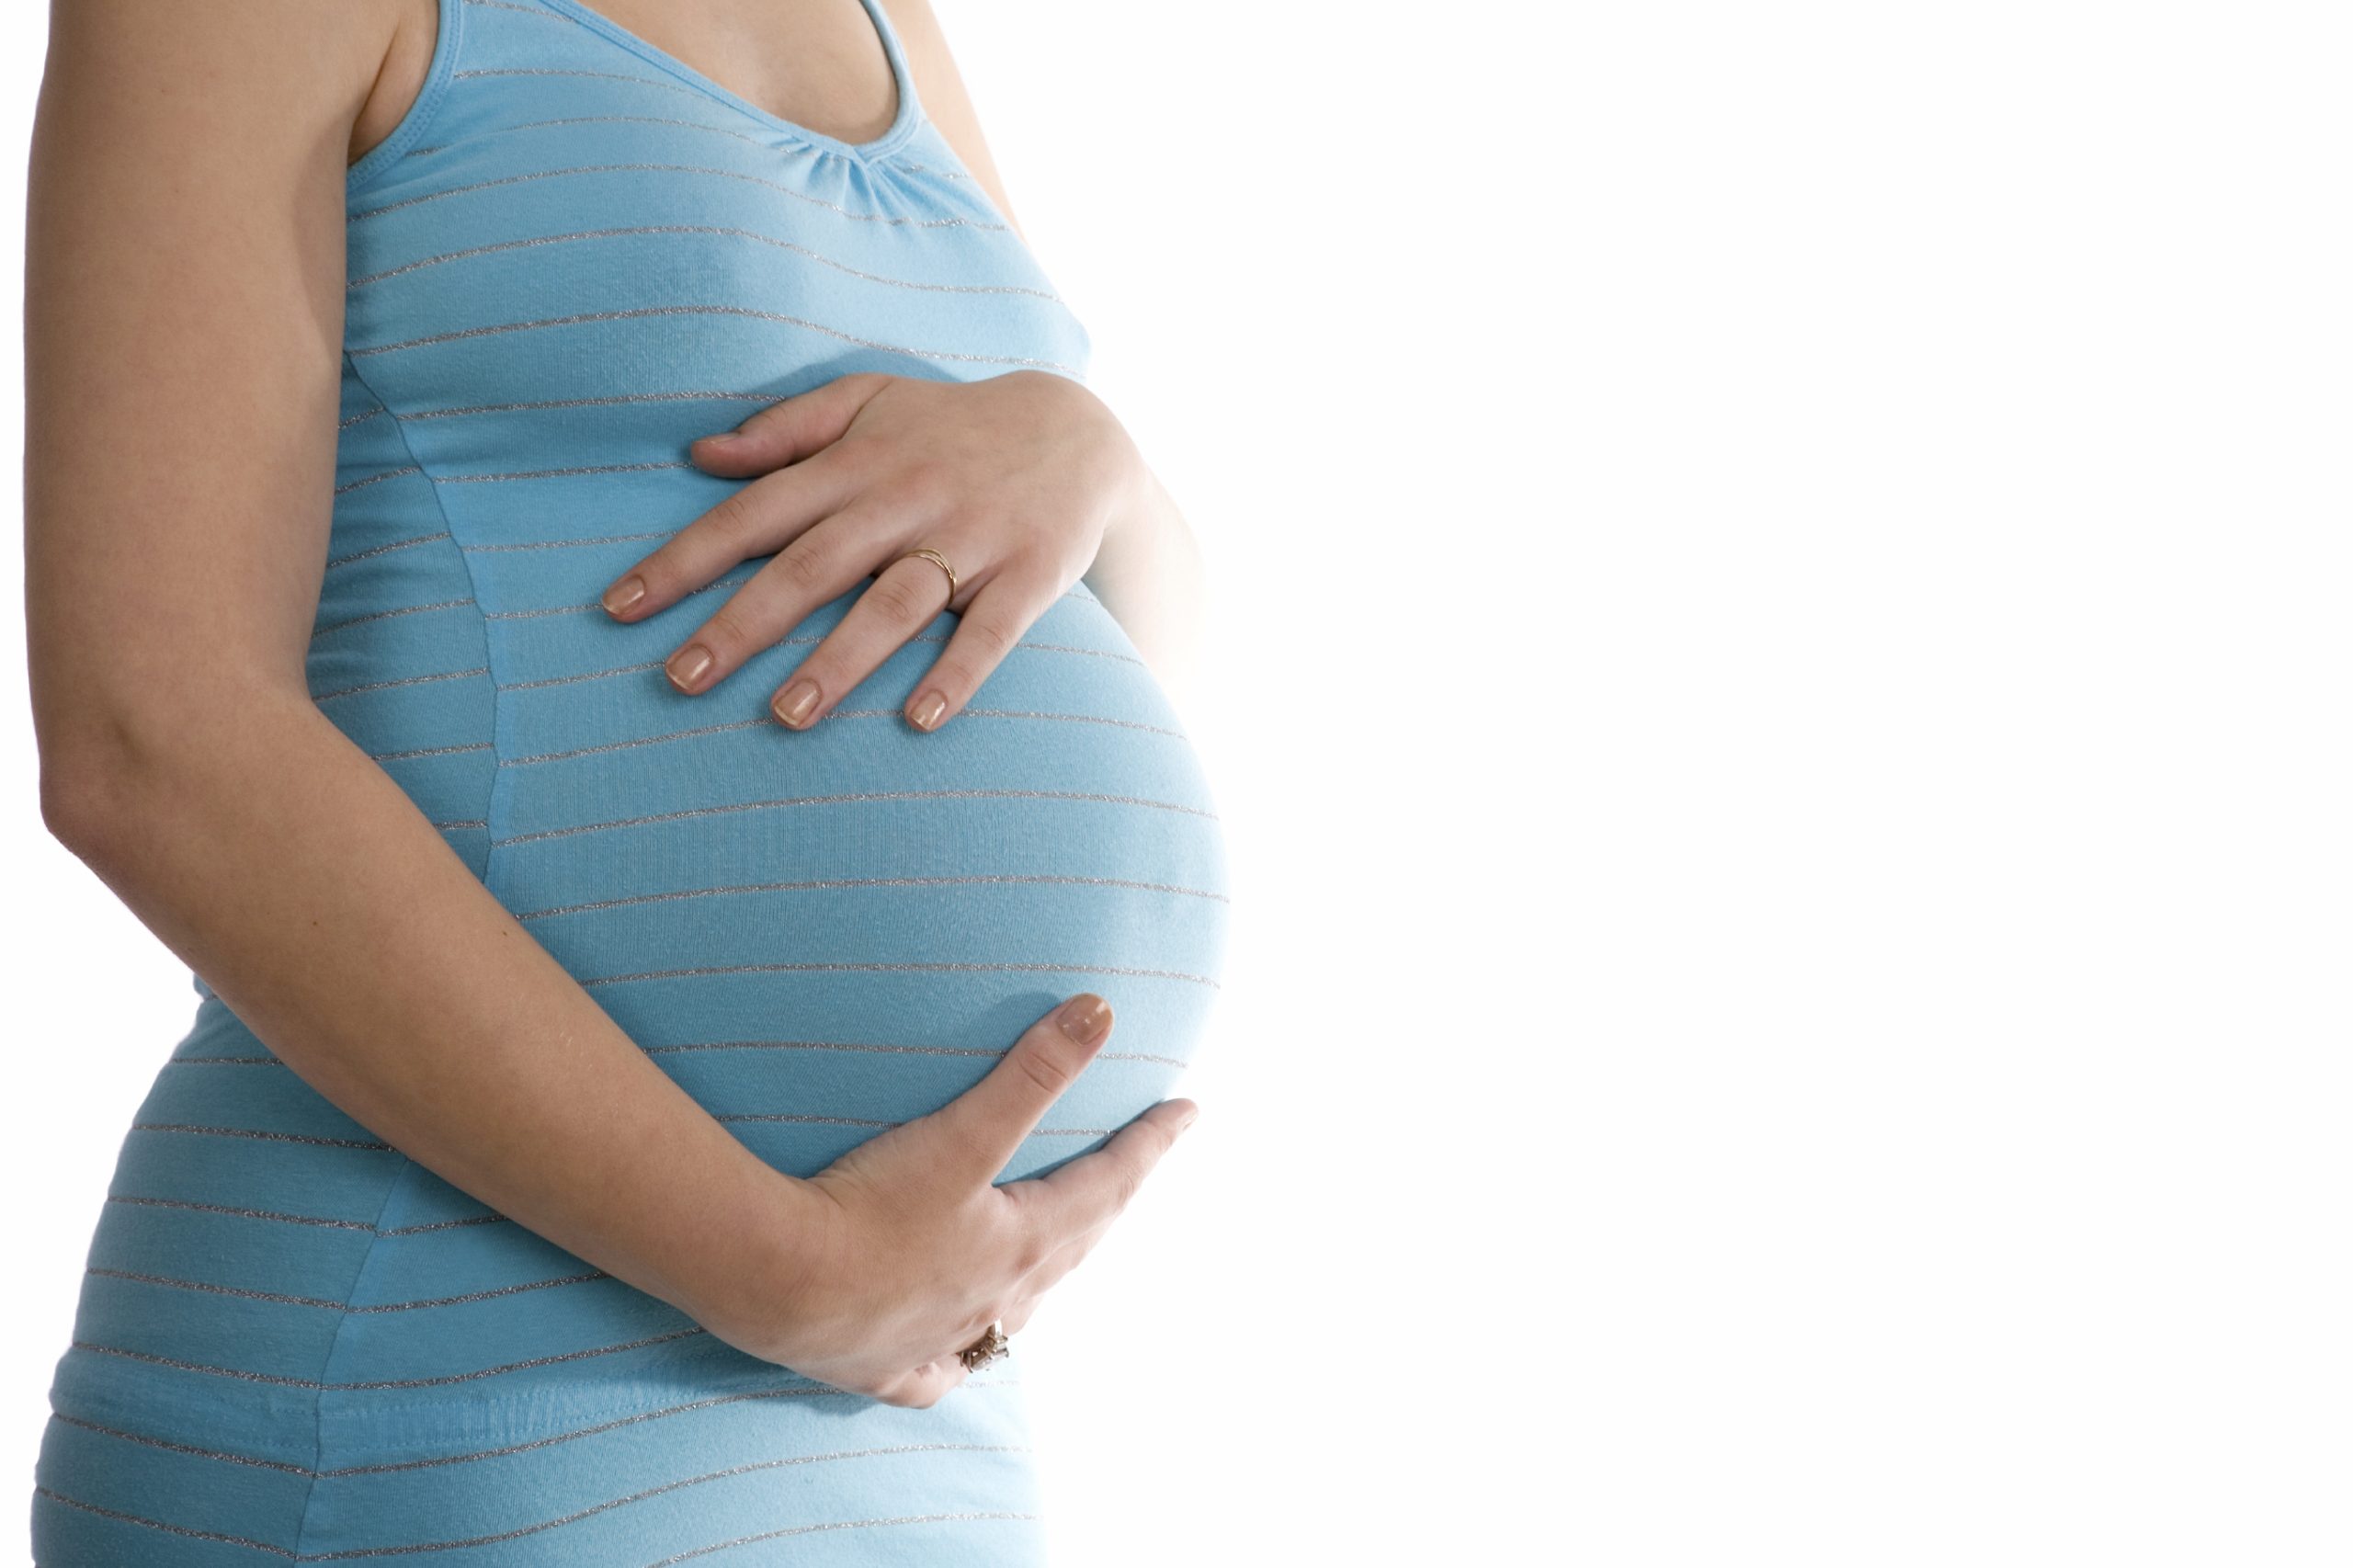 Αυτές είναι οι τροφές που αν καταναλώνει η έγκυος μπορεί να προκαλέσουν αλλεργία και άσθμα στο παιδί